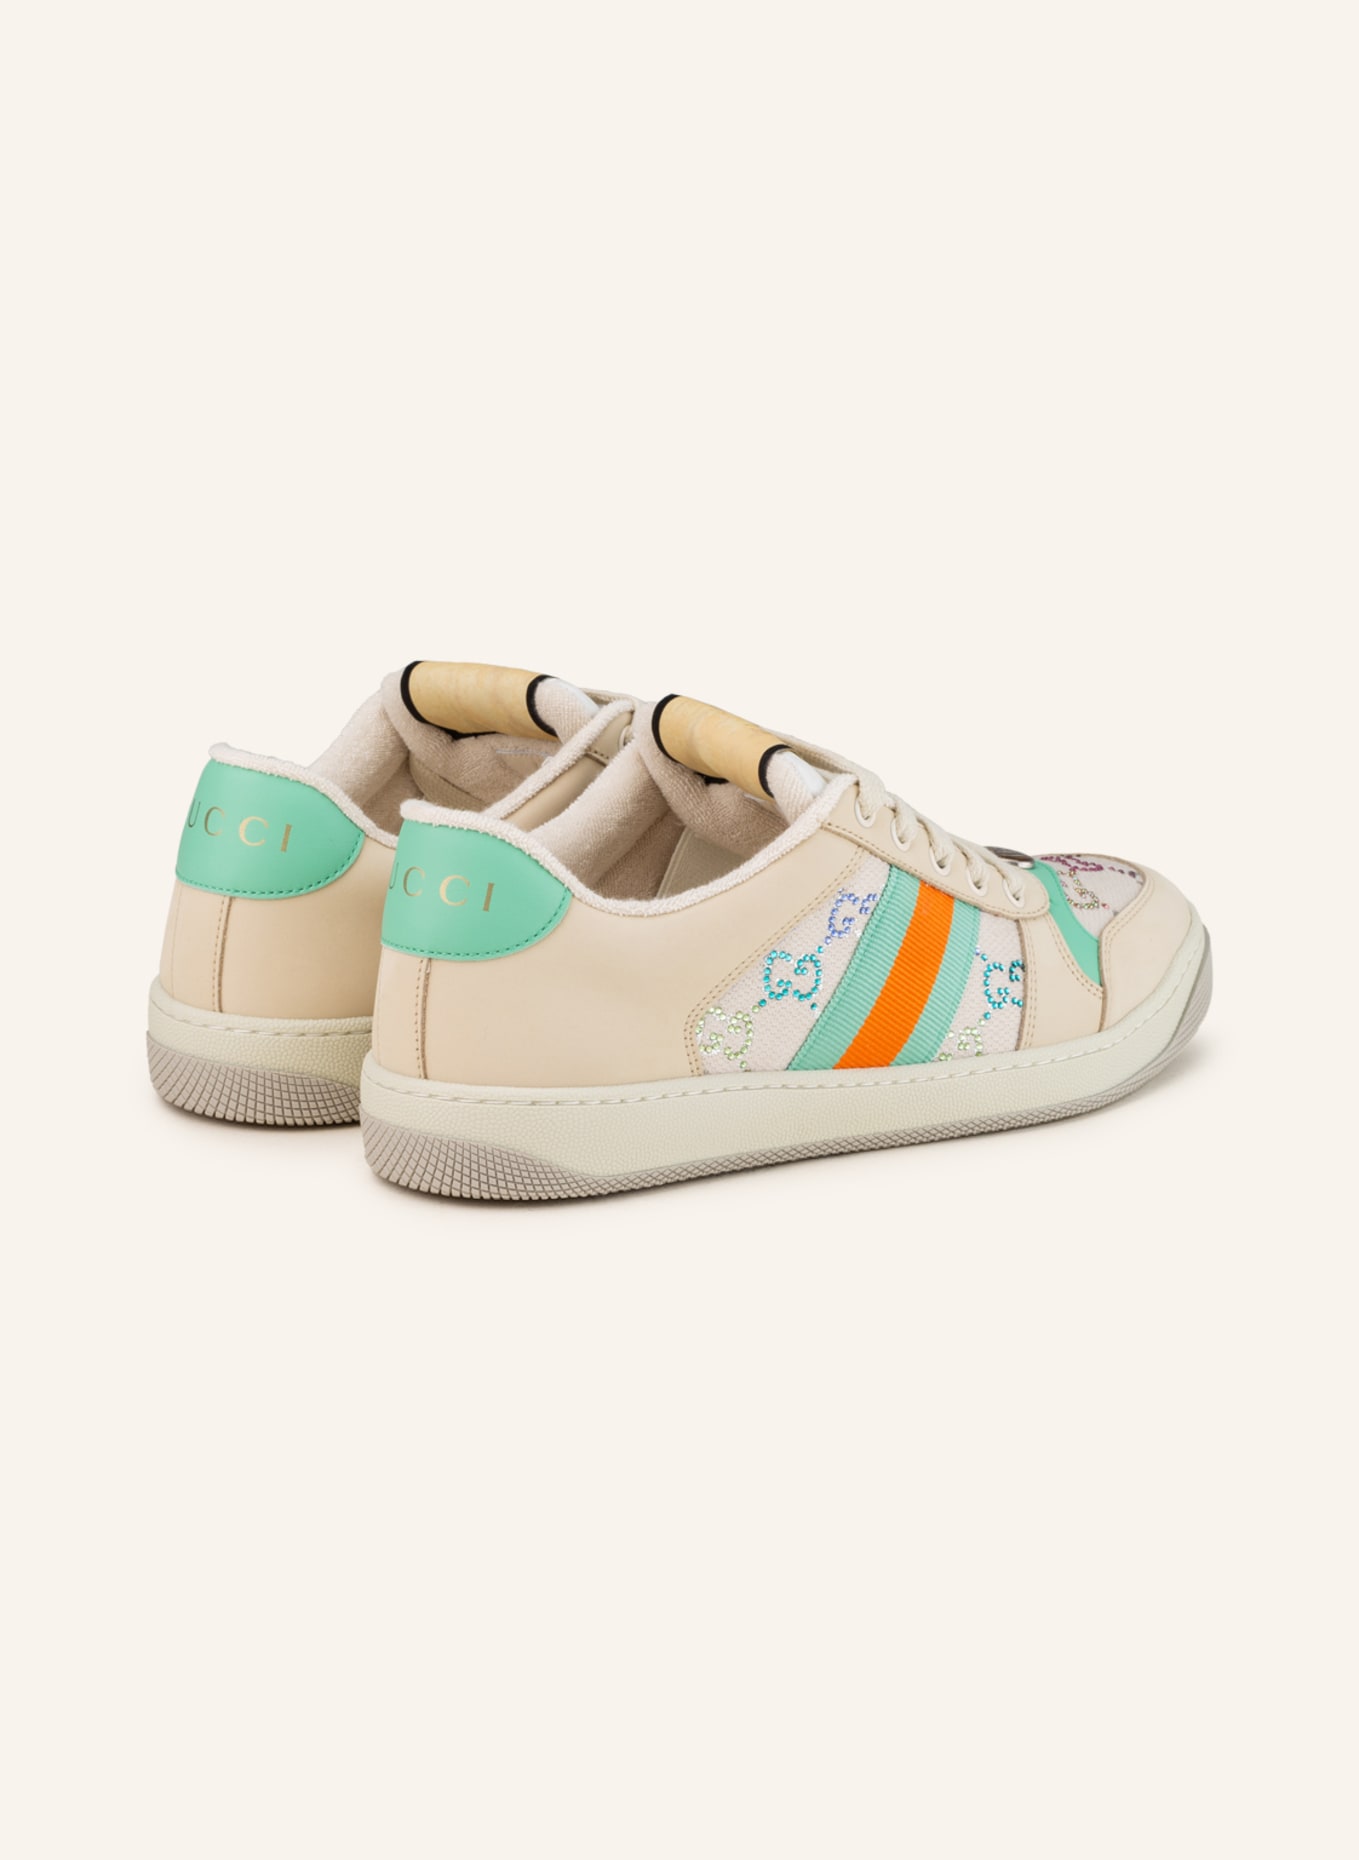 GUCCI Sneaker mit Schmucksteinen, Farbe: BEIGE/ ORANGE/ MINT (Bild 2)